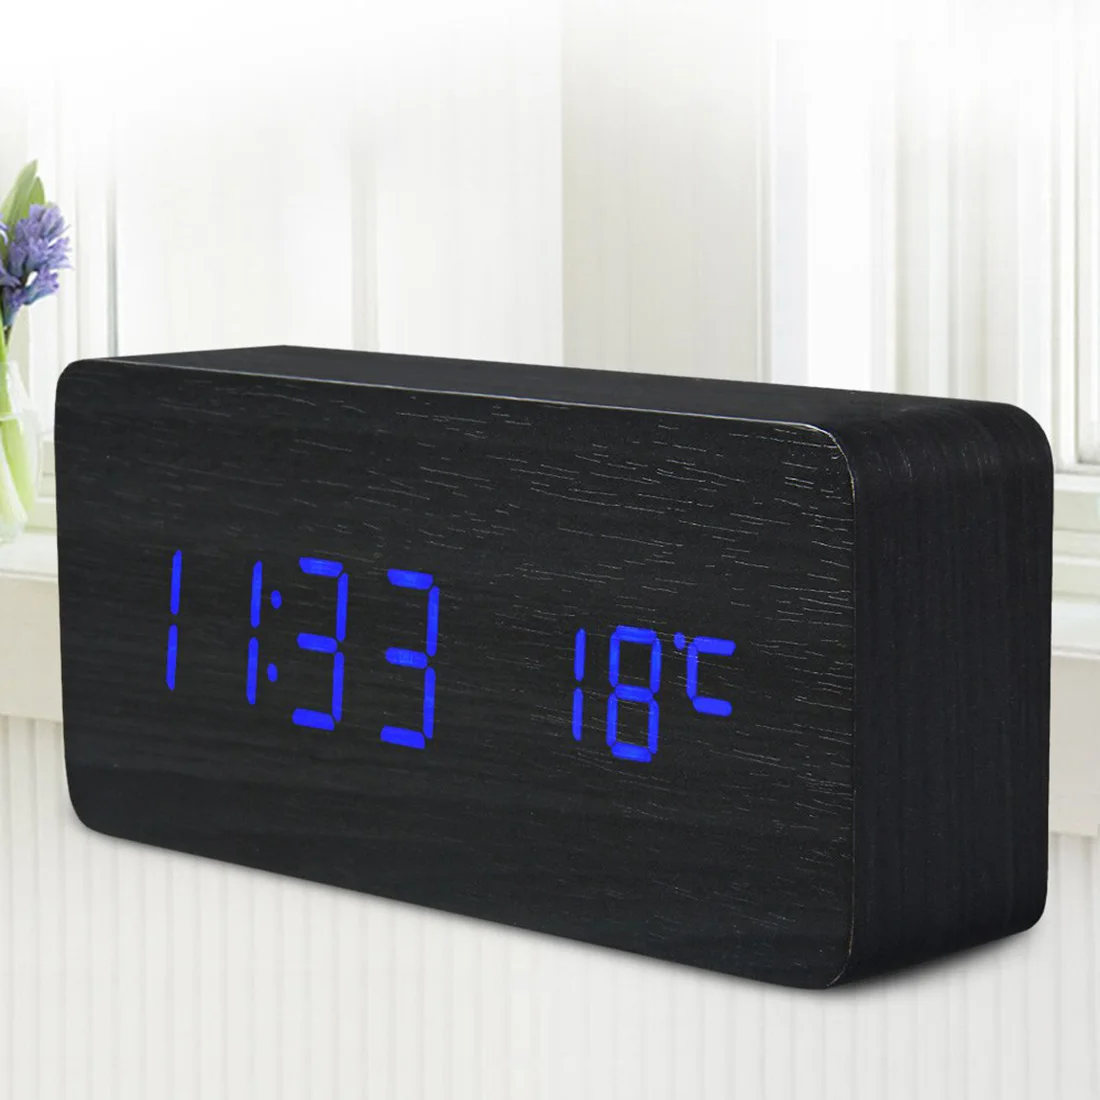 Деревянный светодиодный Будильник температура электронные часы управление звуками цифровой светодиодный дисплей Настольный Календарь настольные часы